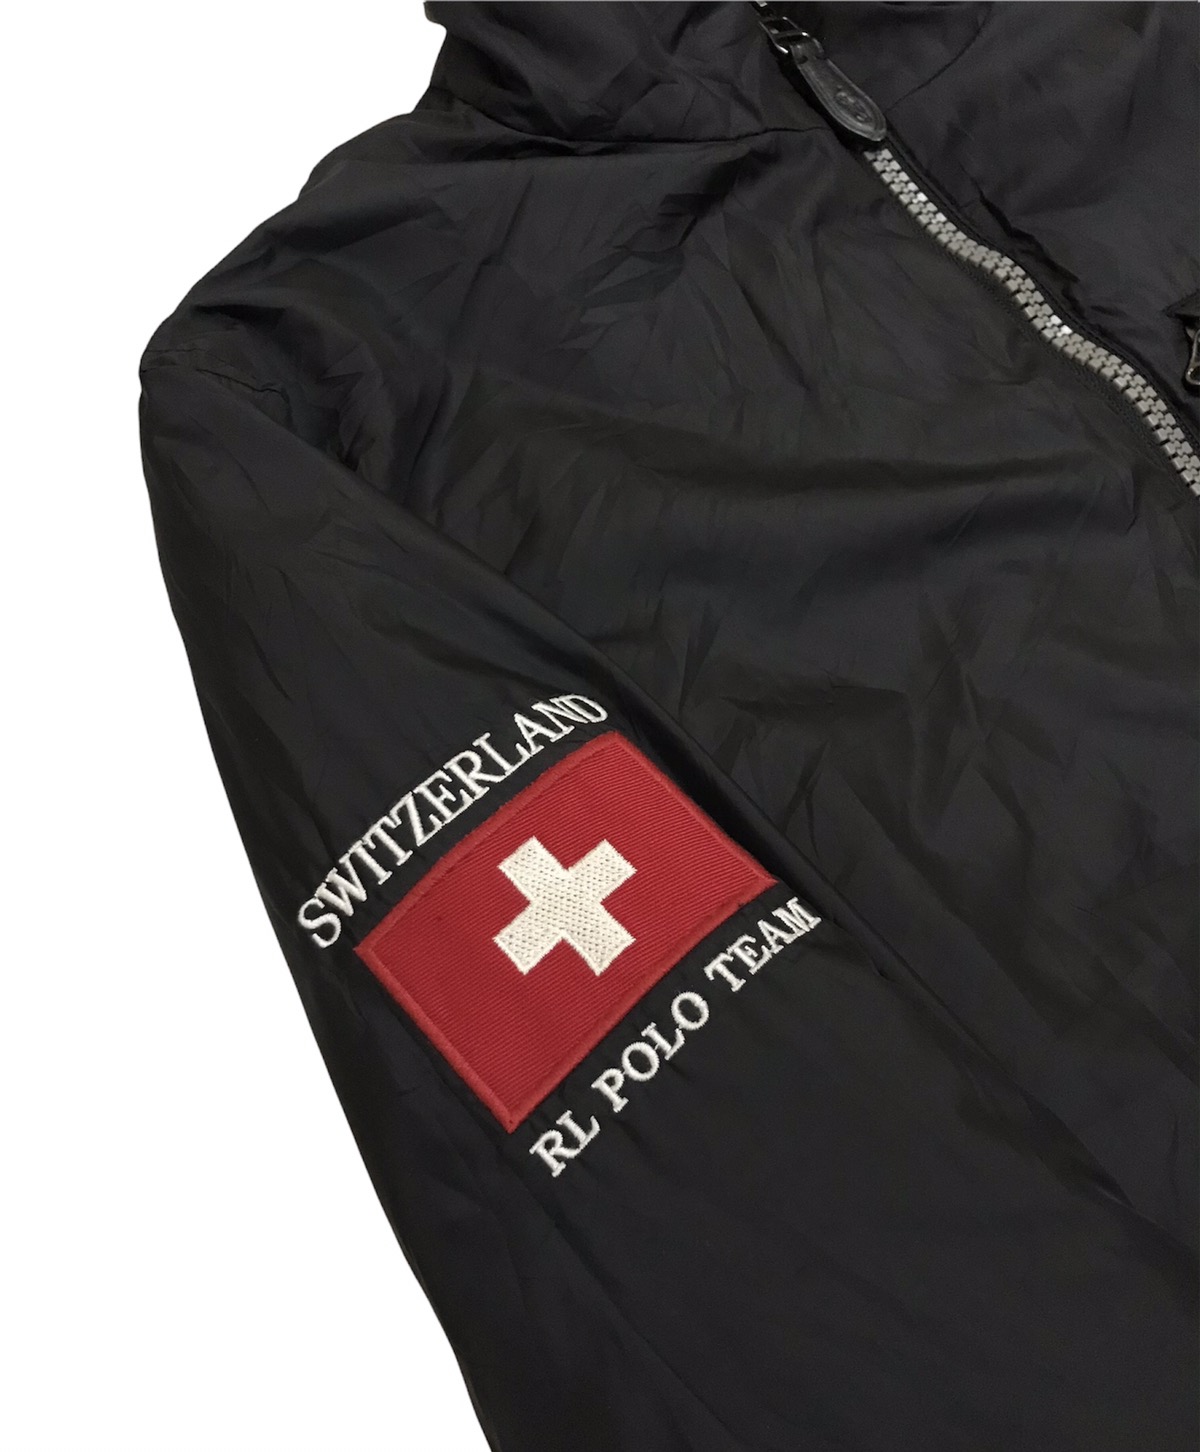 Polo Ralph Lauren - Vintage Polo RL Mercer Team Switzerland Reversible Jacket - 9